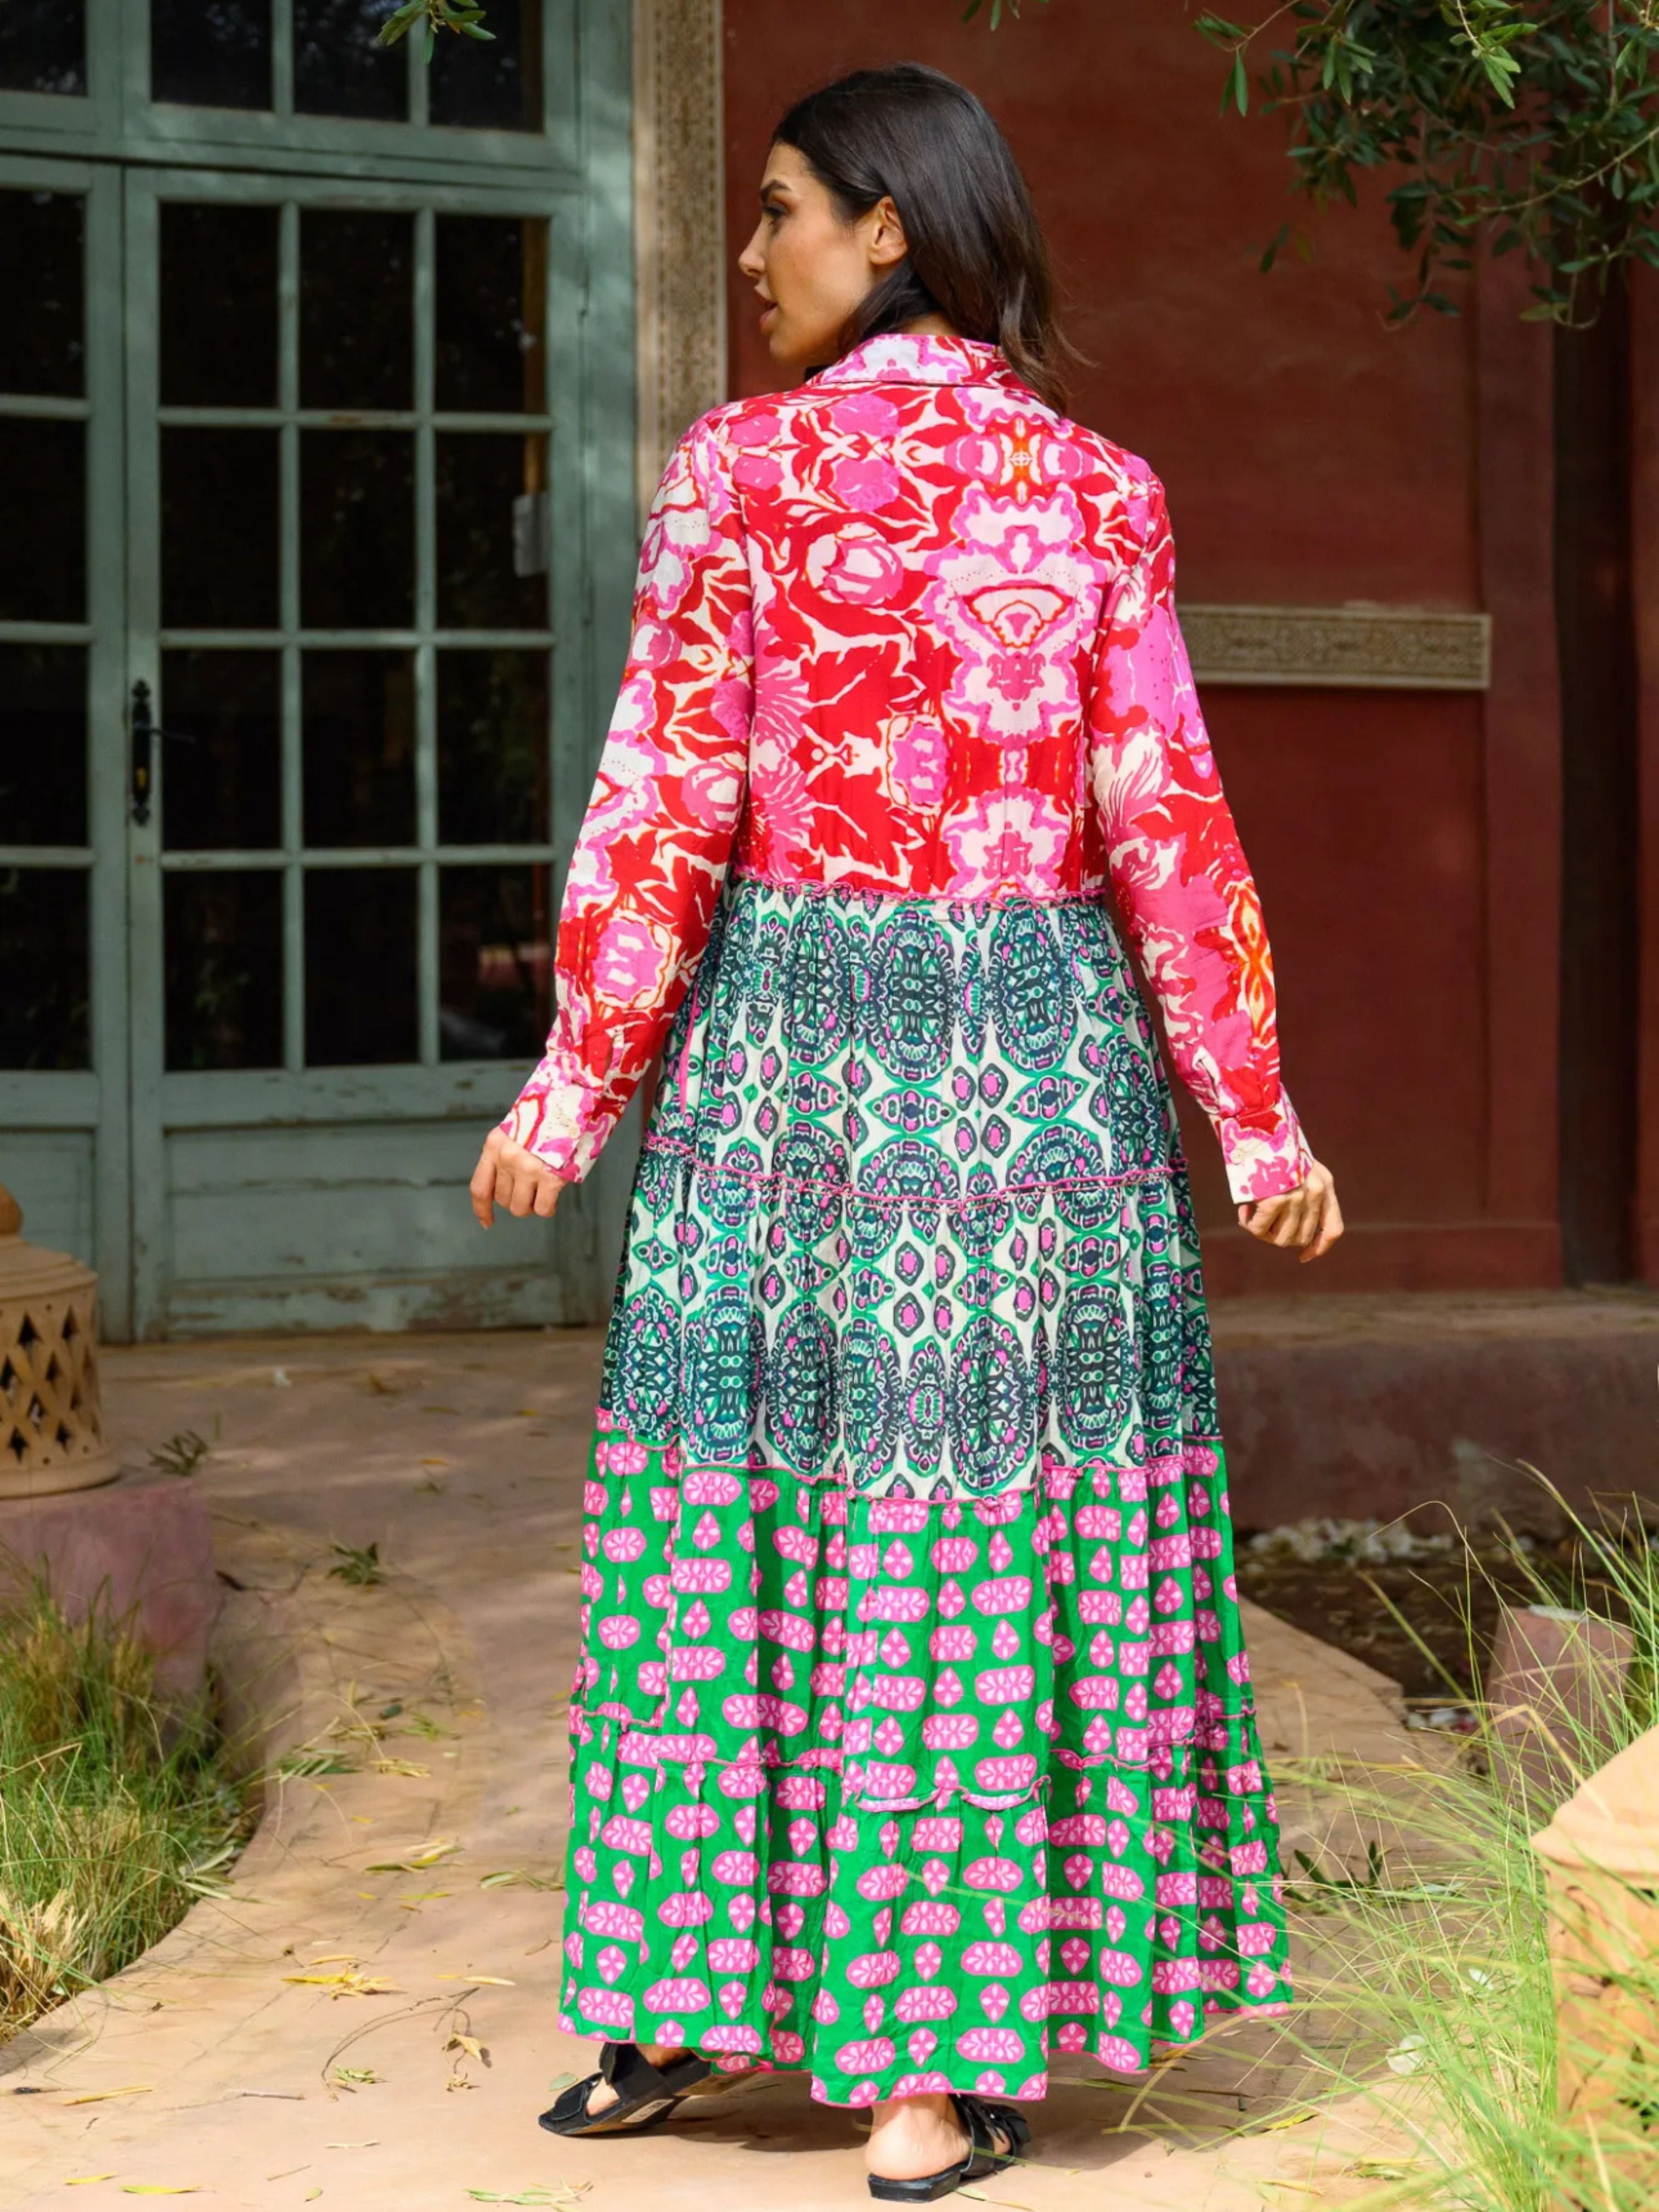 Cuba Bright Print Tiered Maxi Dress